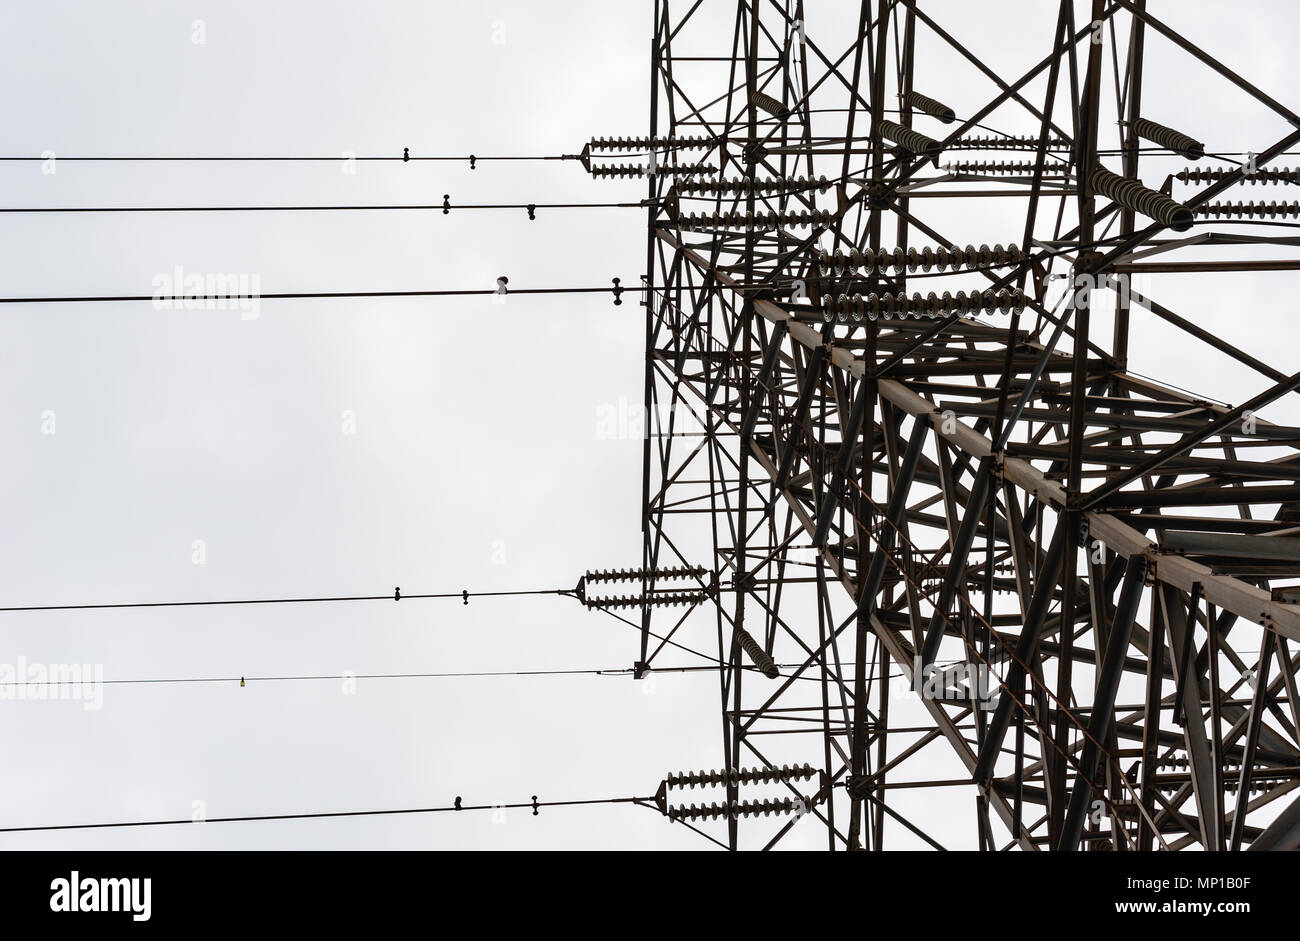 Guardando in alto lungo il metallo grande trasmissione elettrica tower con isolatori in parallelo e i fili contro il cielo nuvoloso. Foto Stock